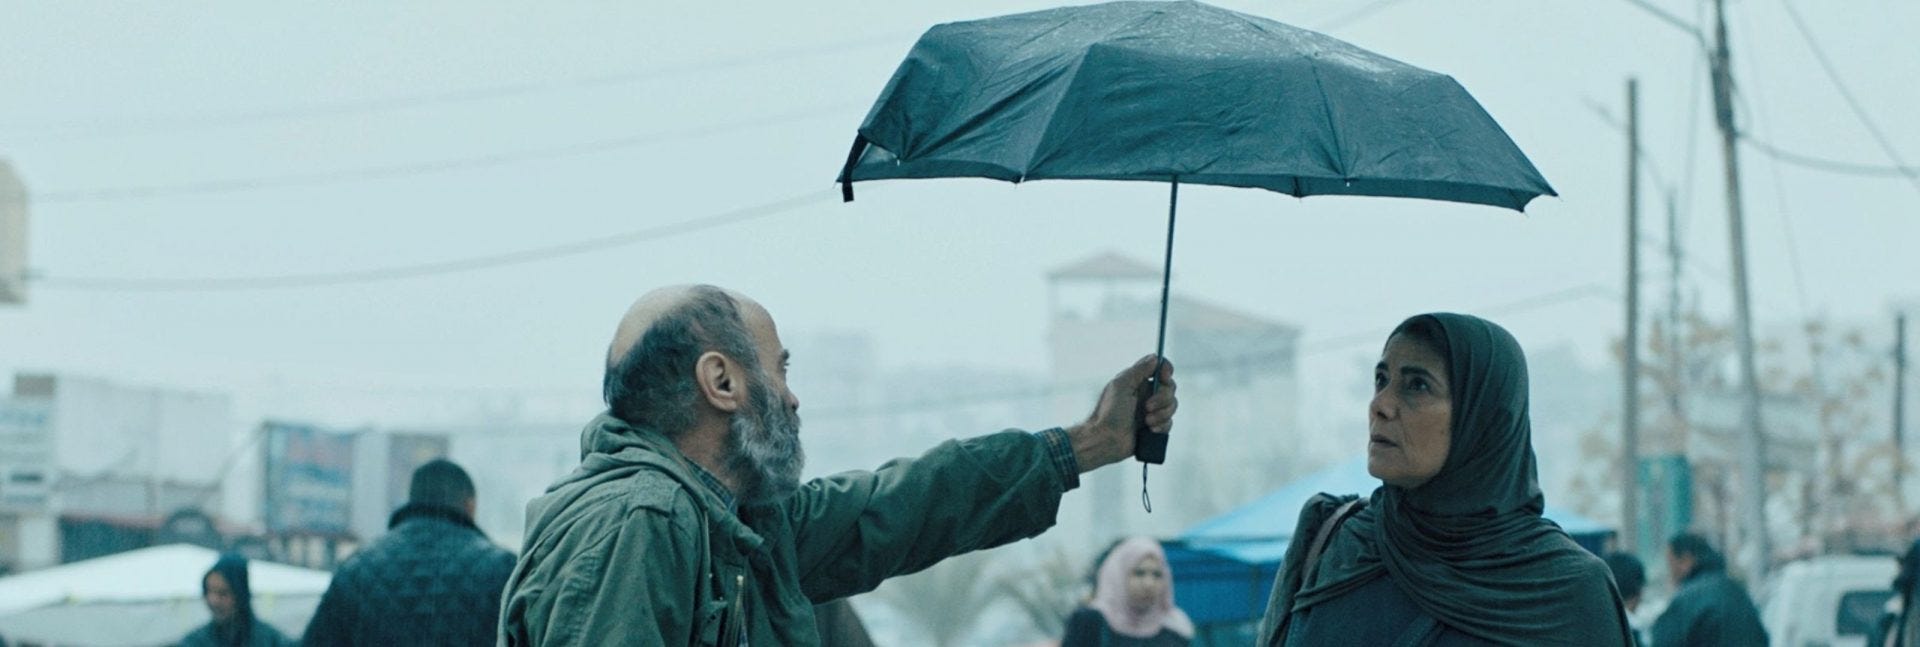 Il pescatore Issa porge un ombrello aperto alla sarta Siham in una piovosa giornata a Gaza. È l'immagine iconica del film Gaza Mon Amour.